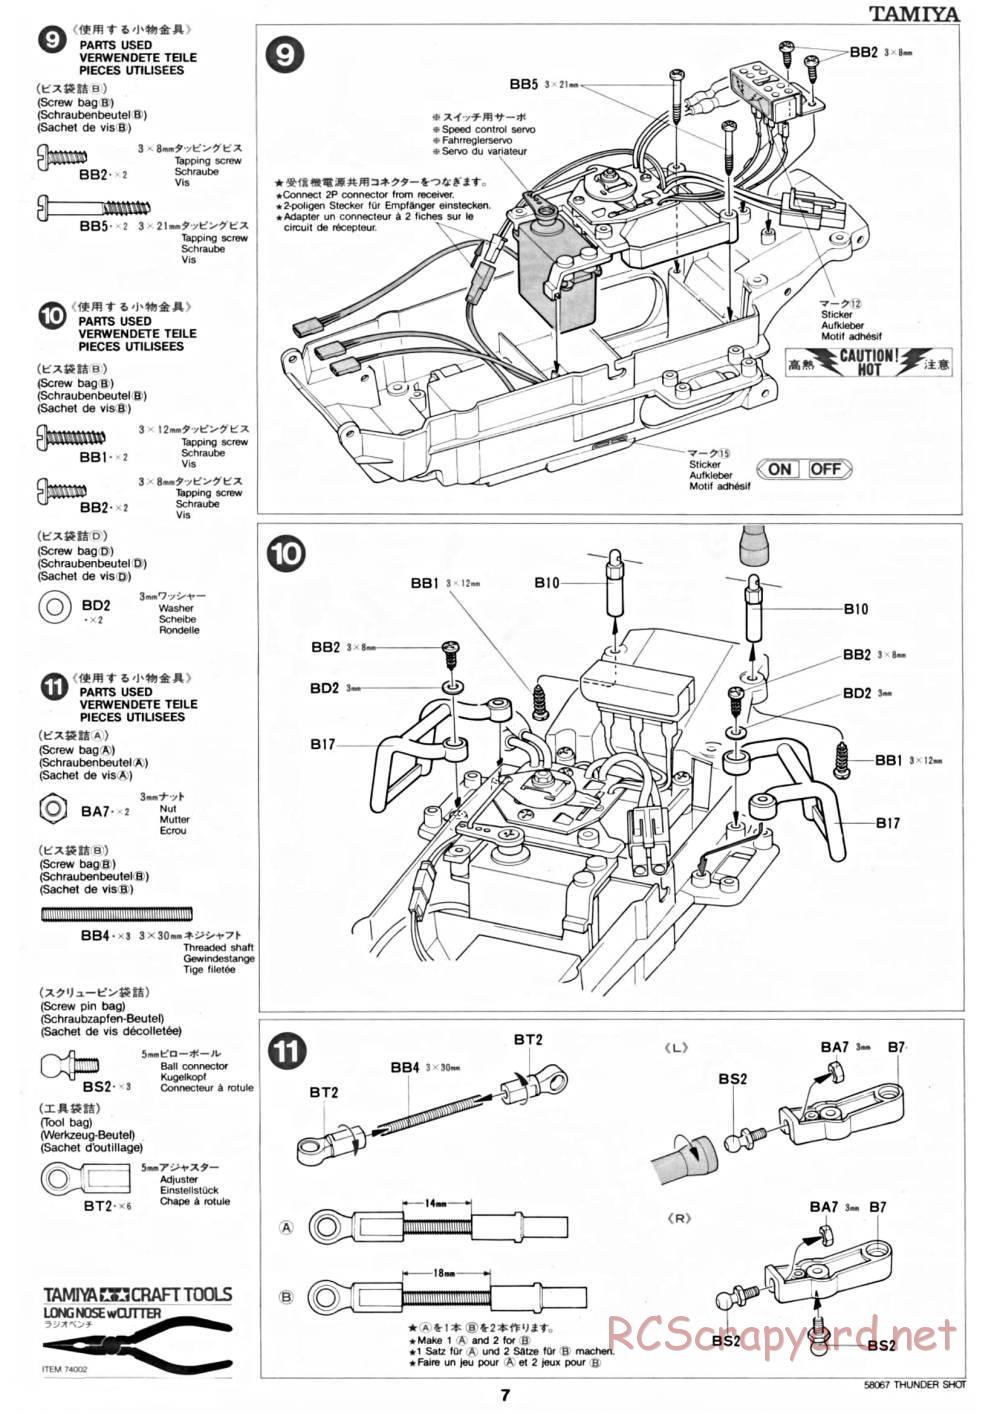 Tamiya - Thunder Shot - 58067 - Manual - Page 7